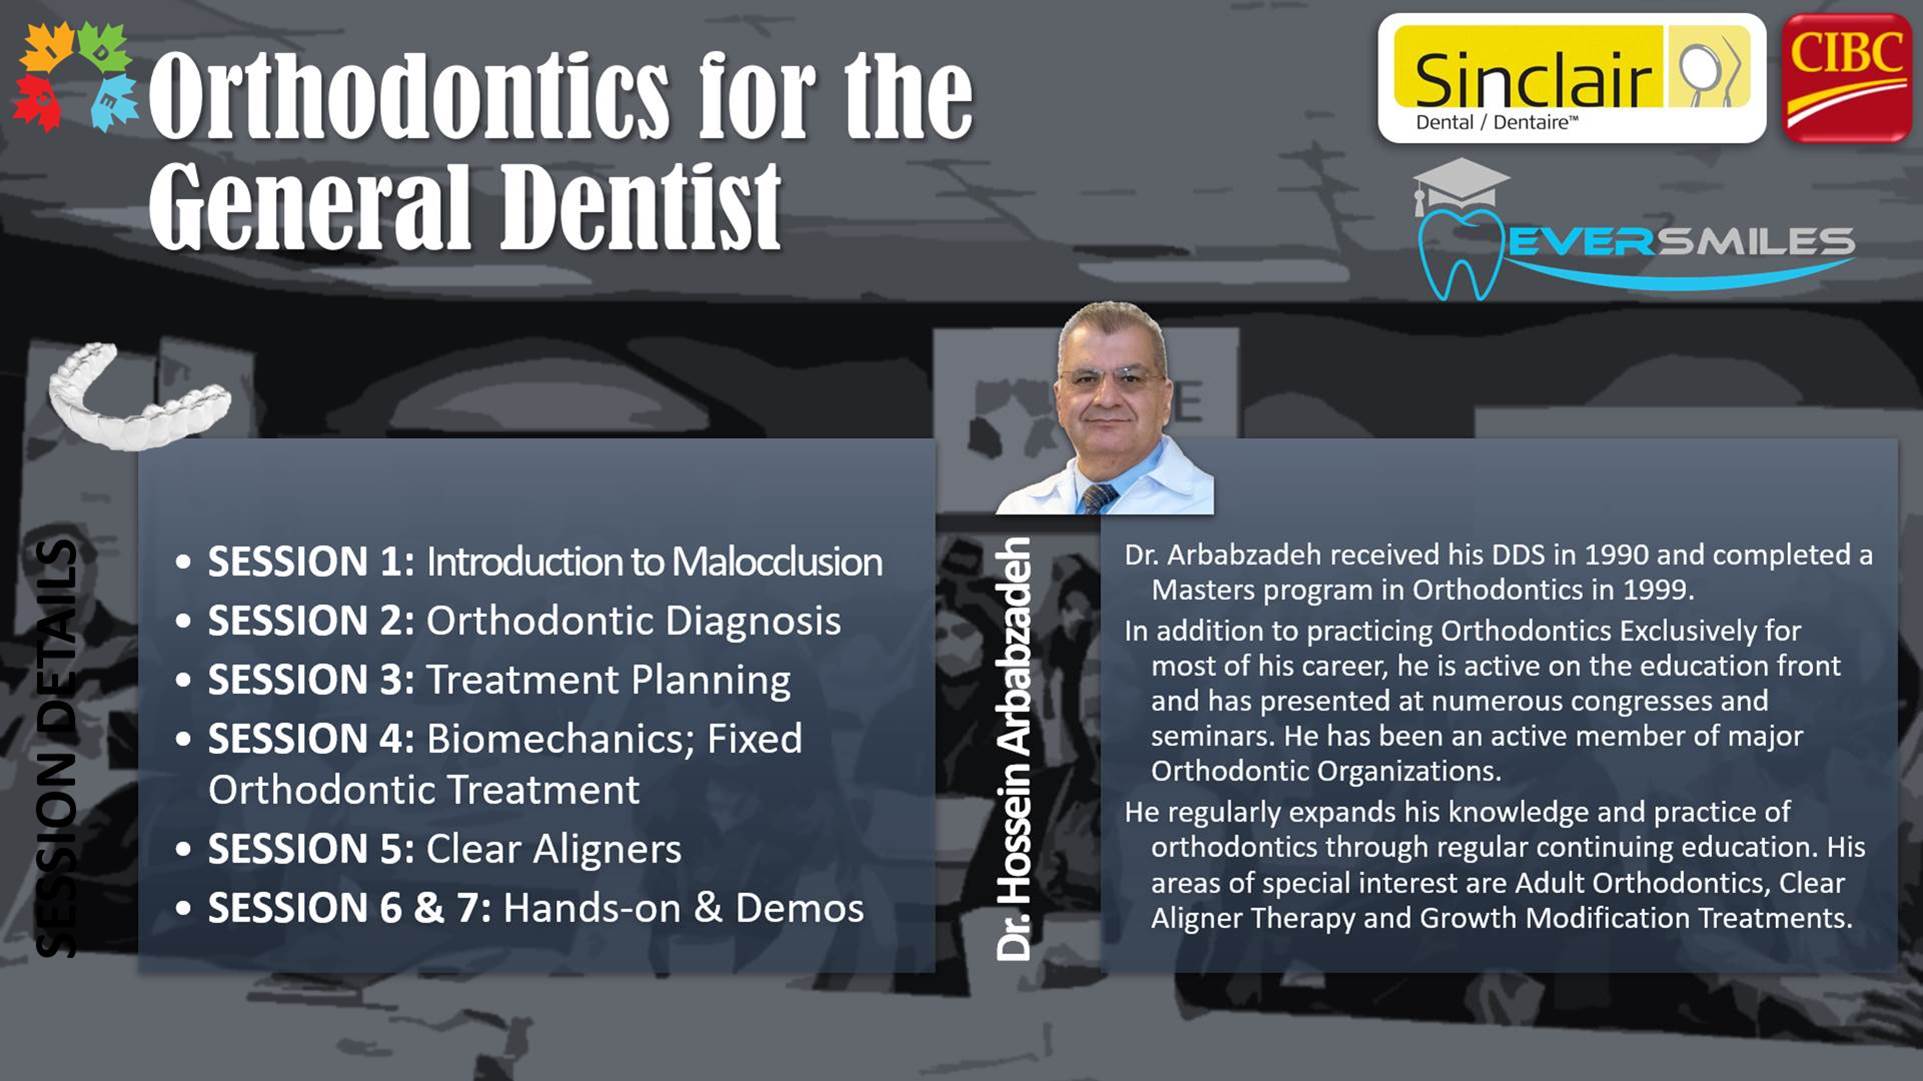 CE - orthodontics for dentist 2021 banner